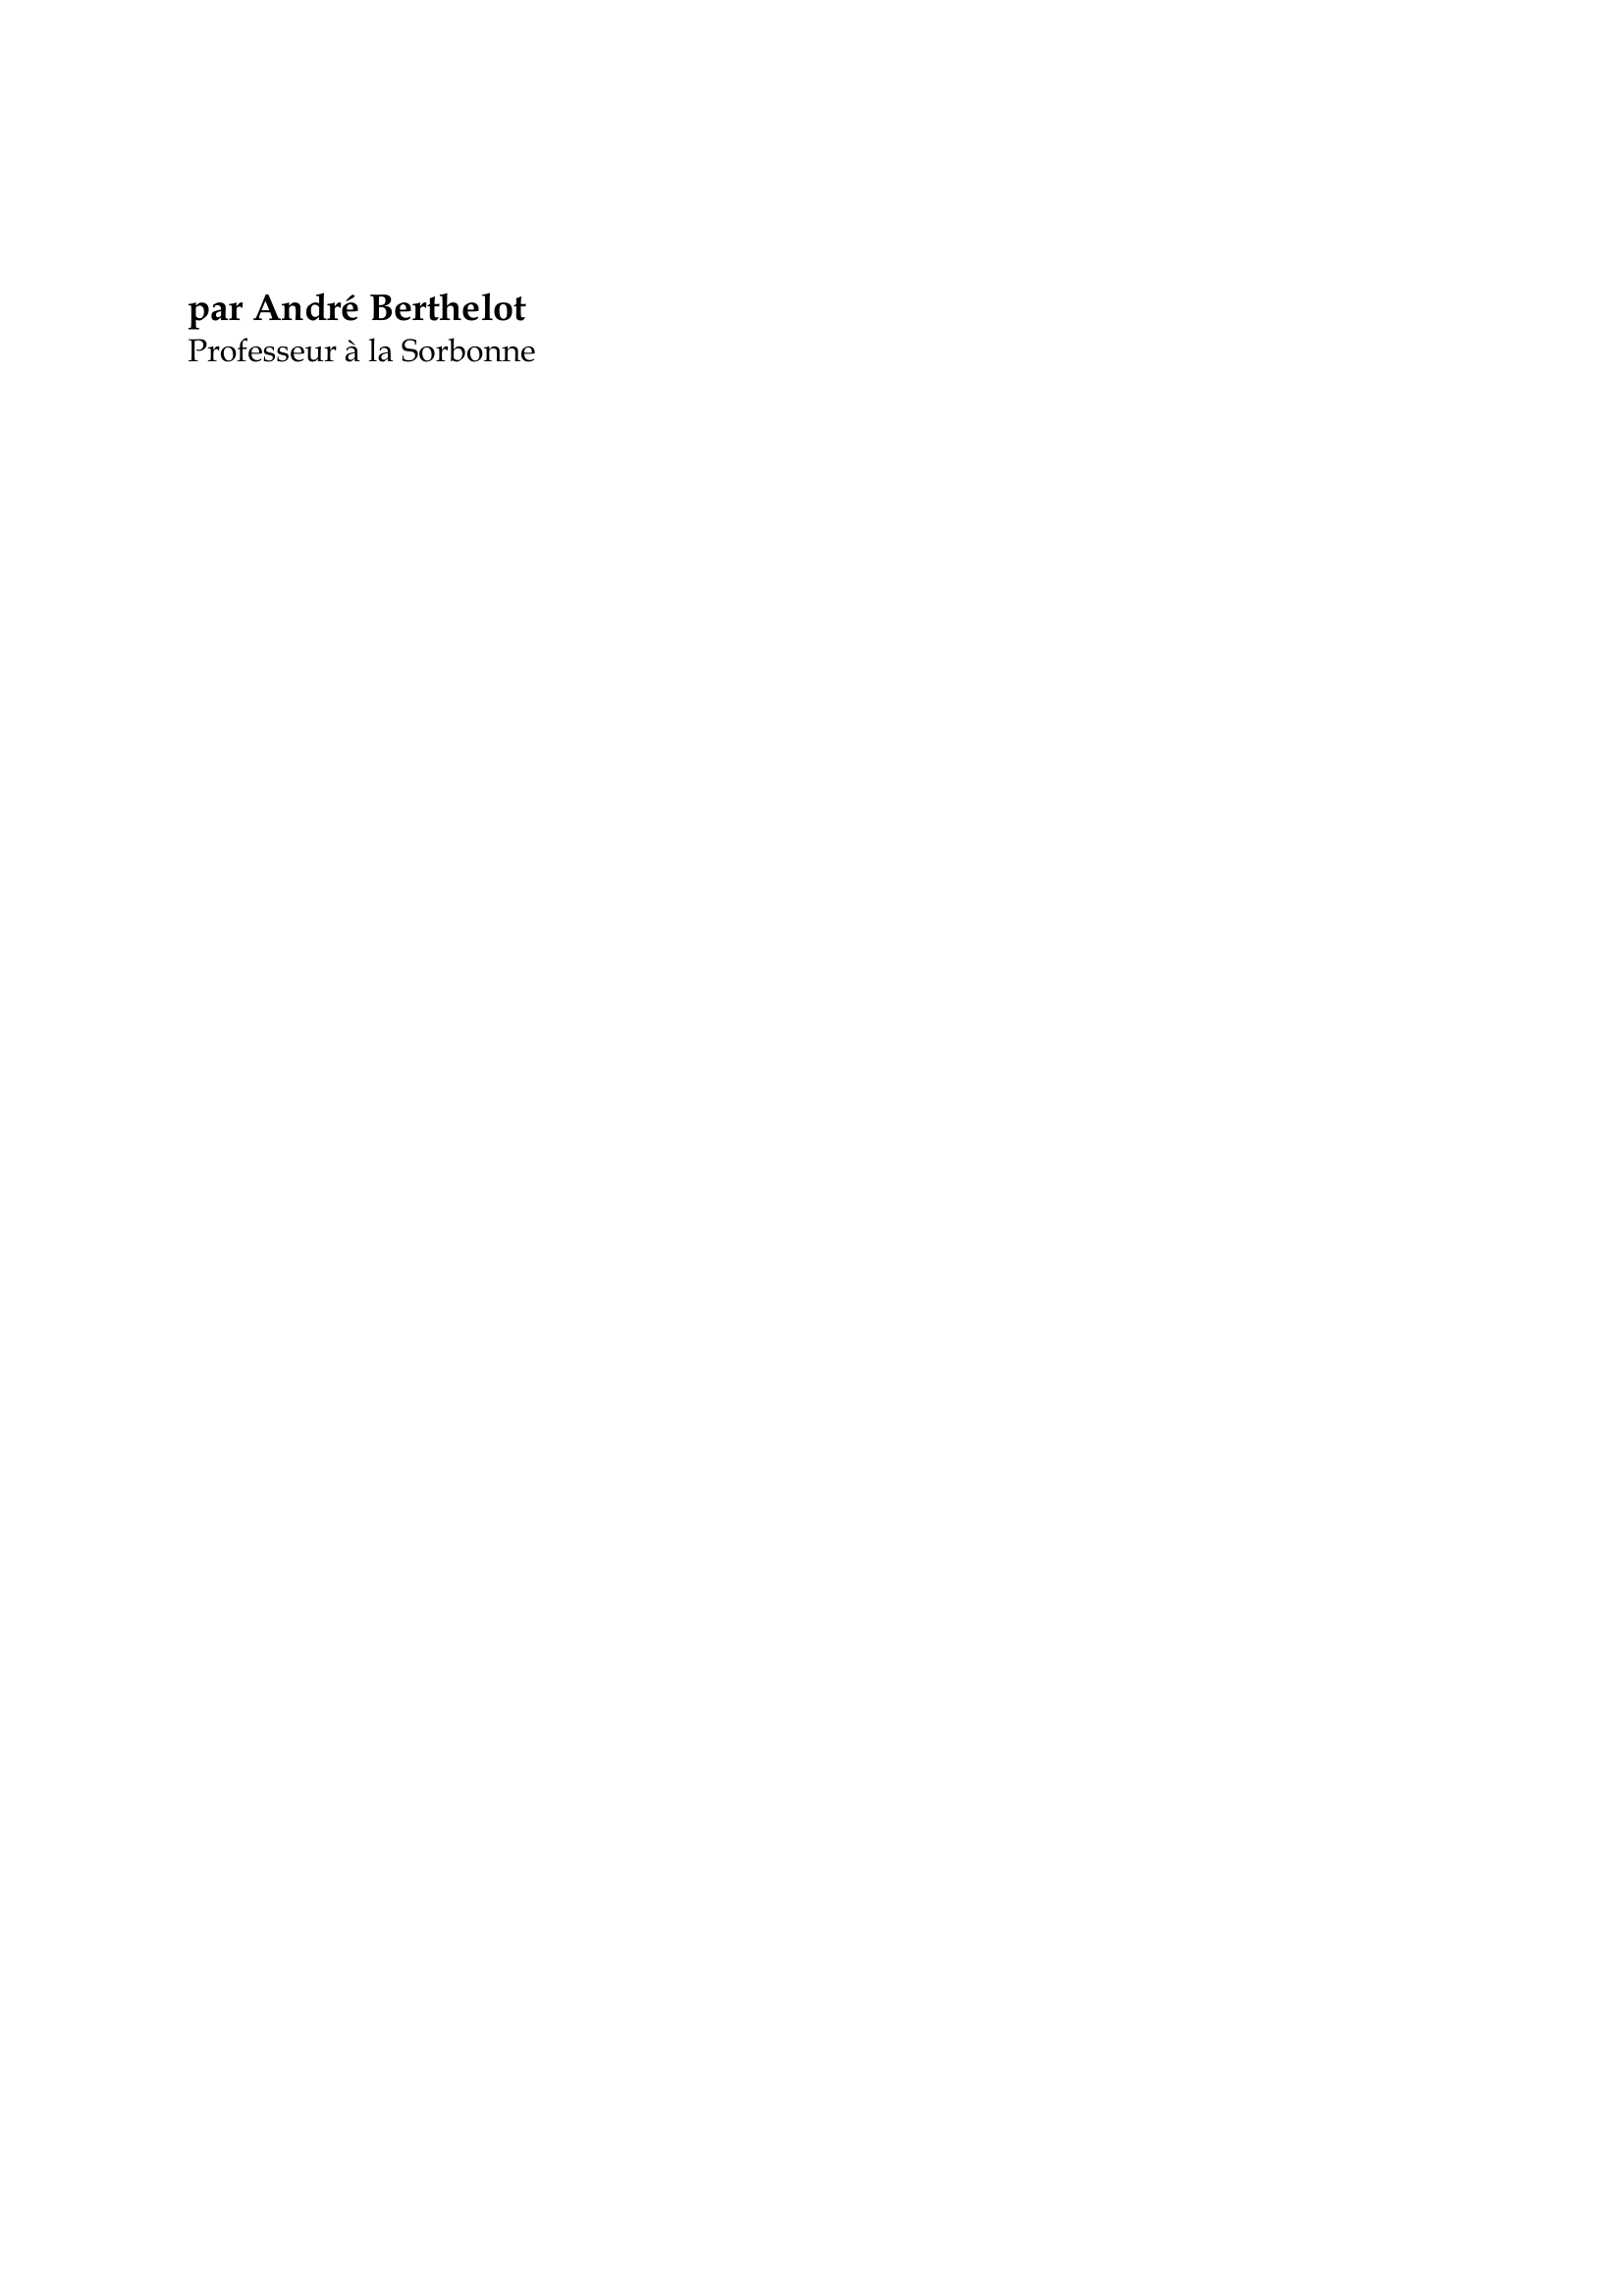 Prévisualisation du document Frédéric Joliot-Curie

par André Berthelot
Professeur à la Sorbonne

Dans la révolution scientifique